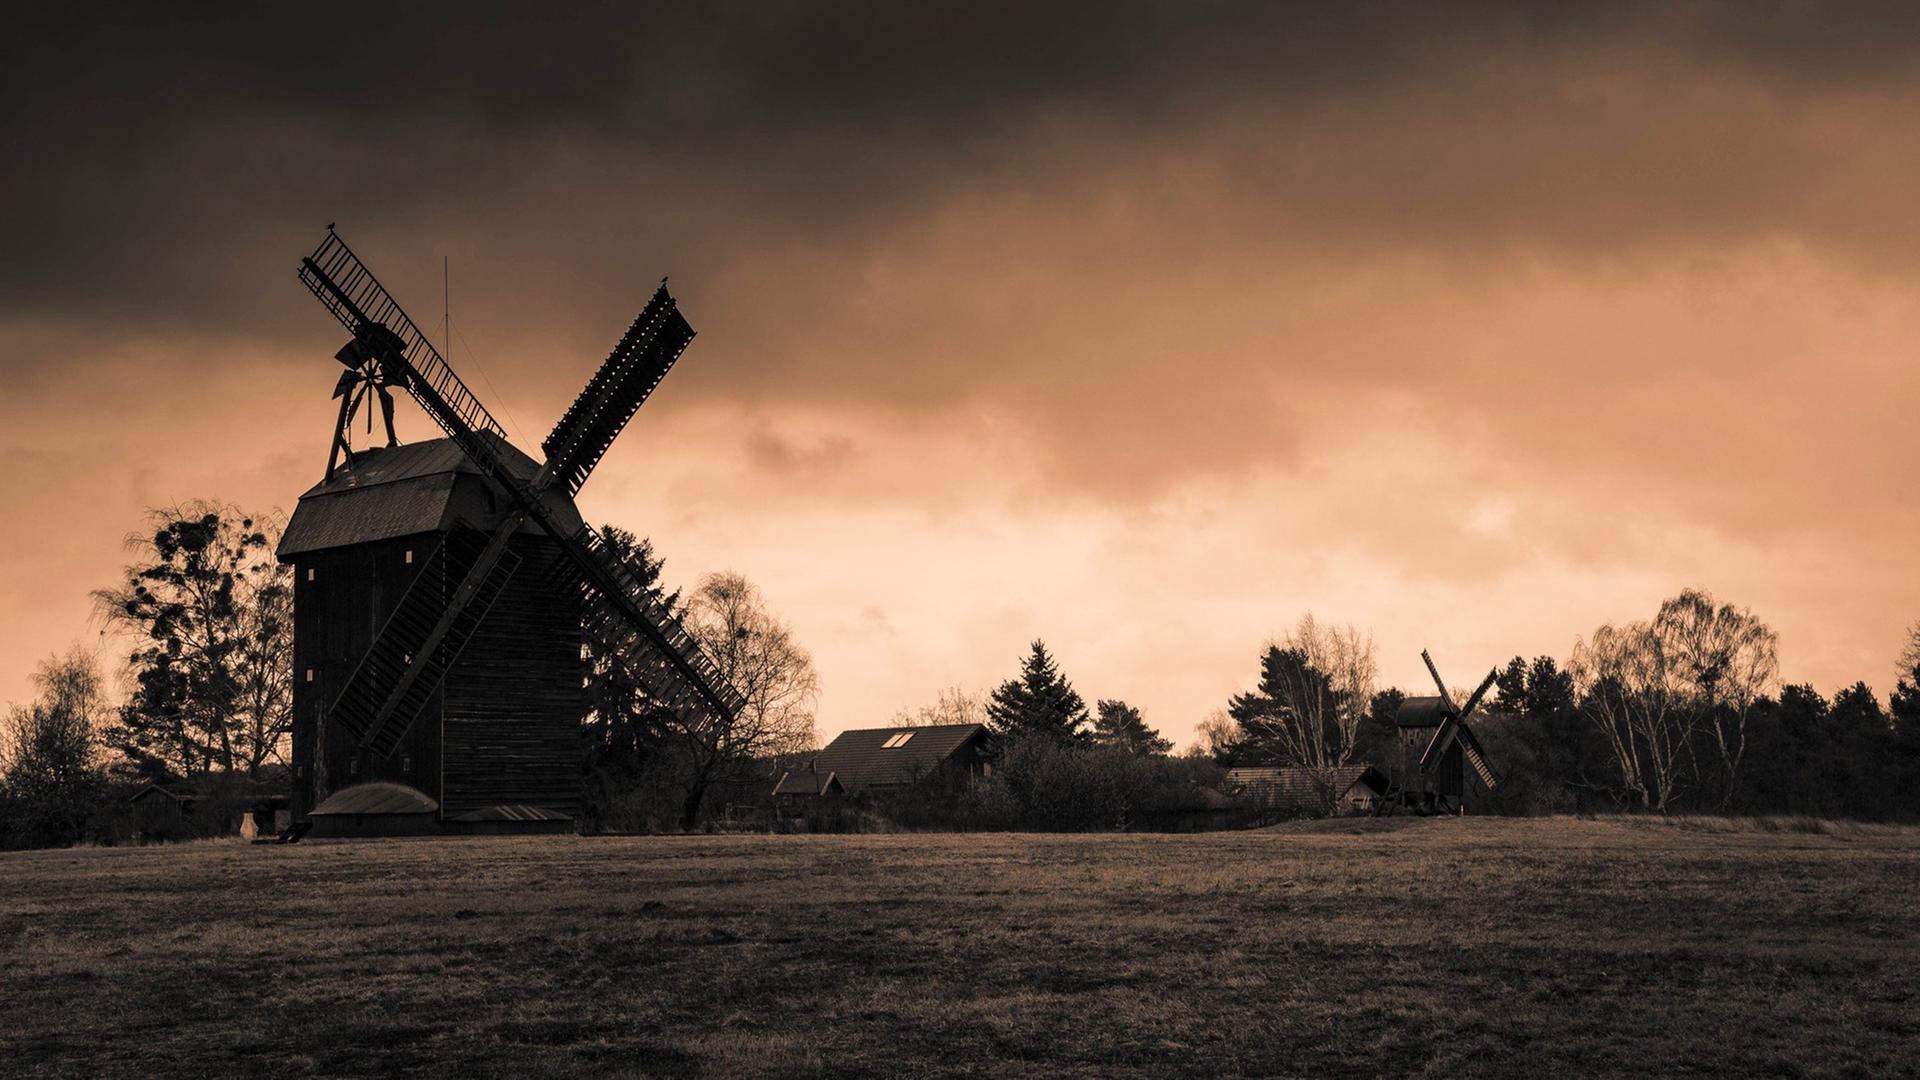 Zwei historische Windmühlen vor einem dramatisch gefärbten Himmel, im Vordergrund ist eine Wiese zu sehen.